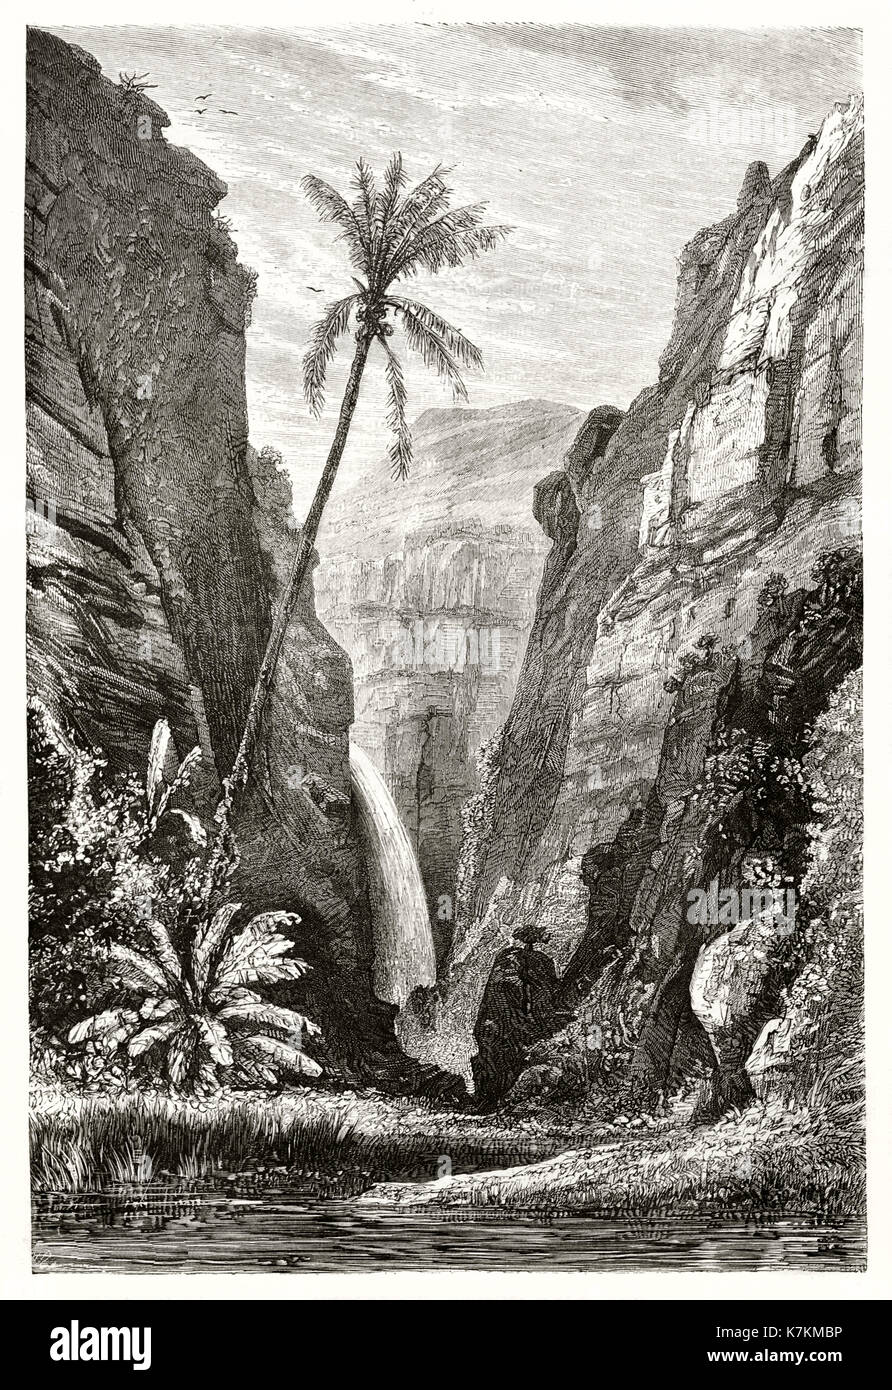 Old view of La Bernica, Reunion island. By De Berard after Roussin, publ. on Le Tour du Monde, Paris, 1862 Stock Photo